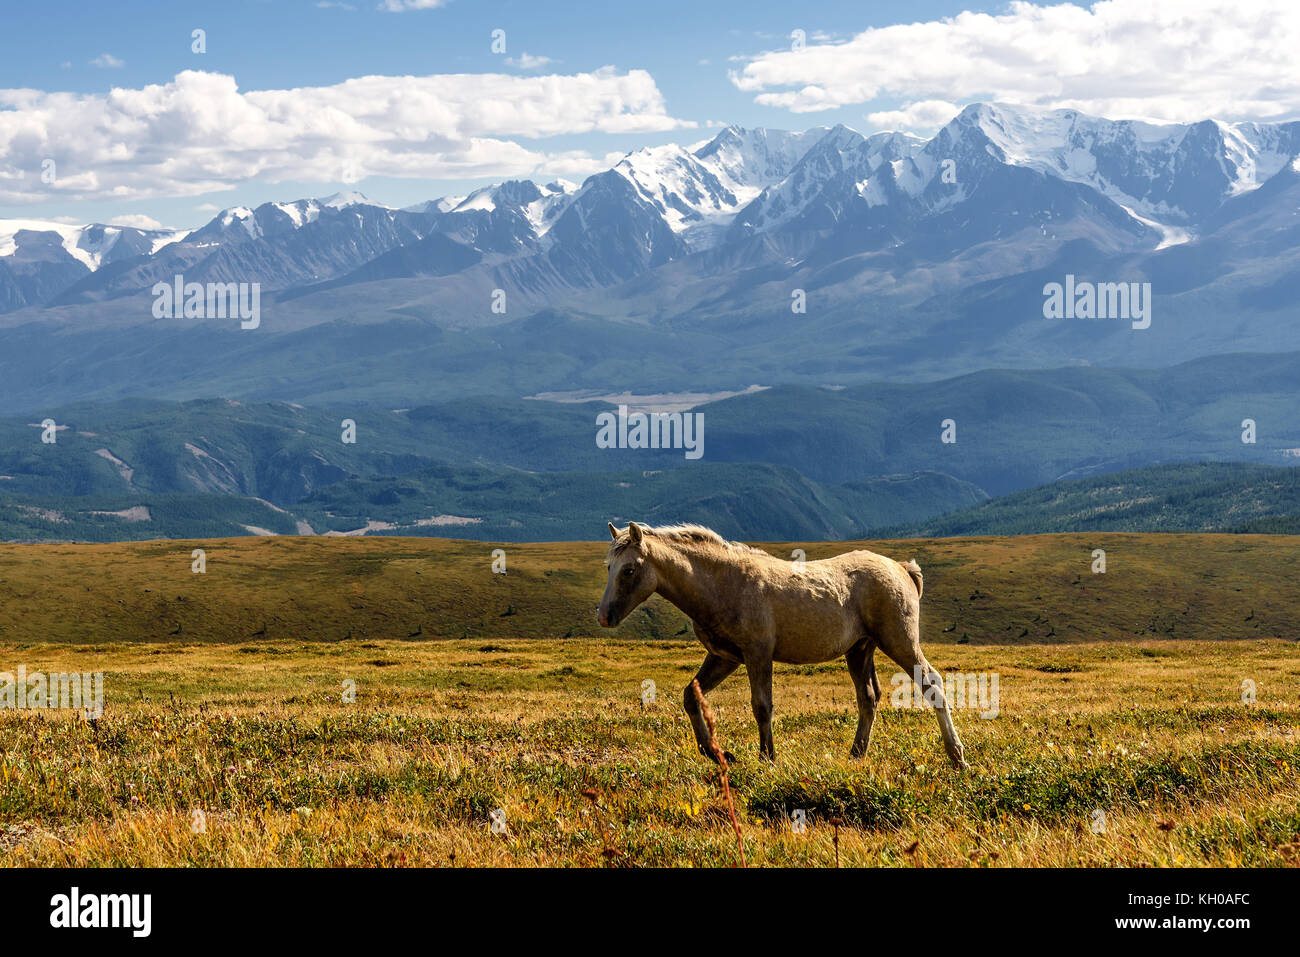 Une vue panoramique d'un cheval blanc paissant dans une prairie à flanc de colline dans le contexte des belles montagnes, ciel bleu et nuages Banque D'Images